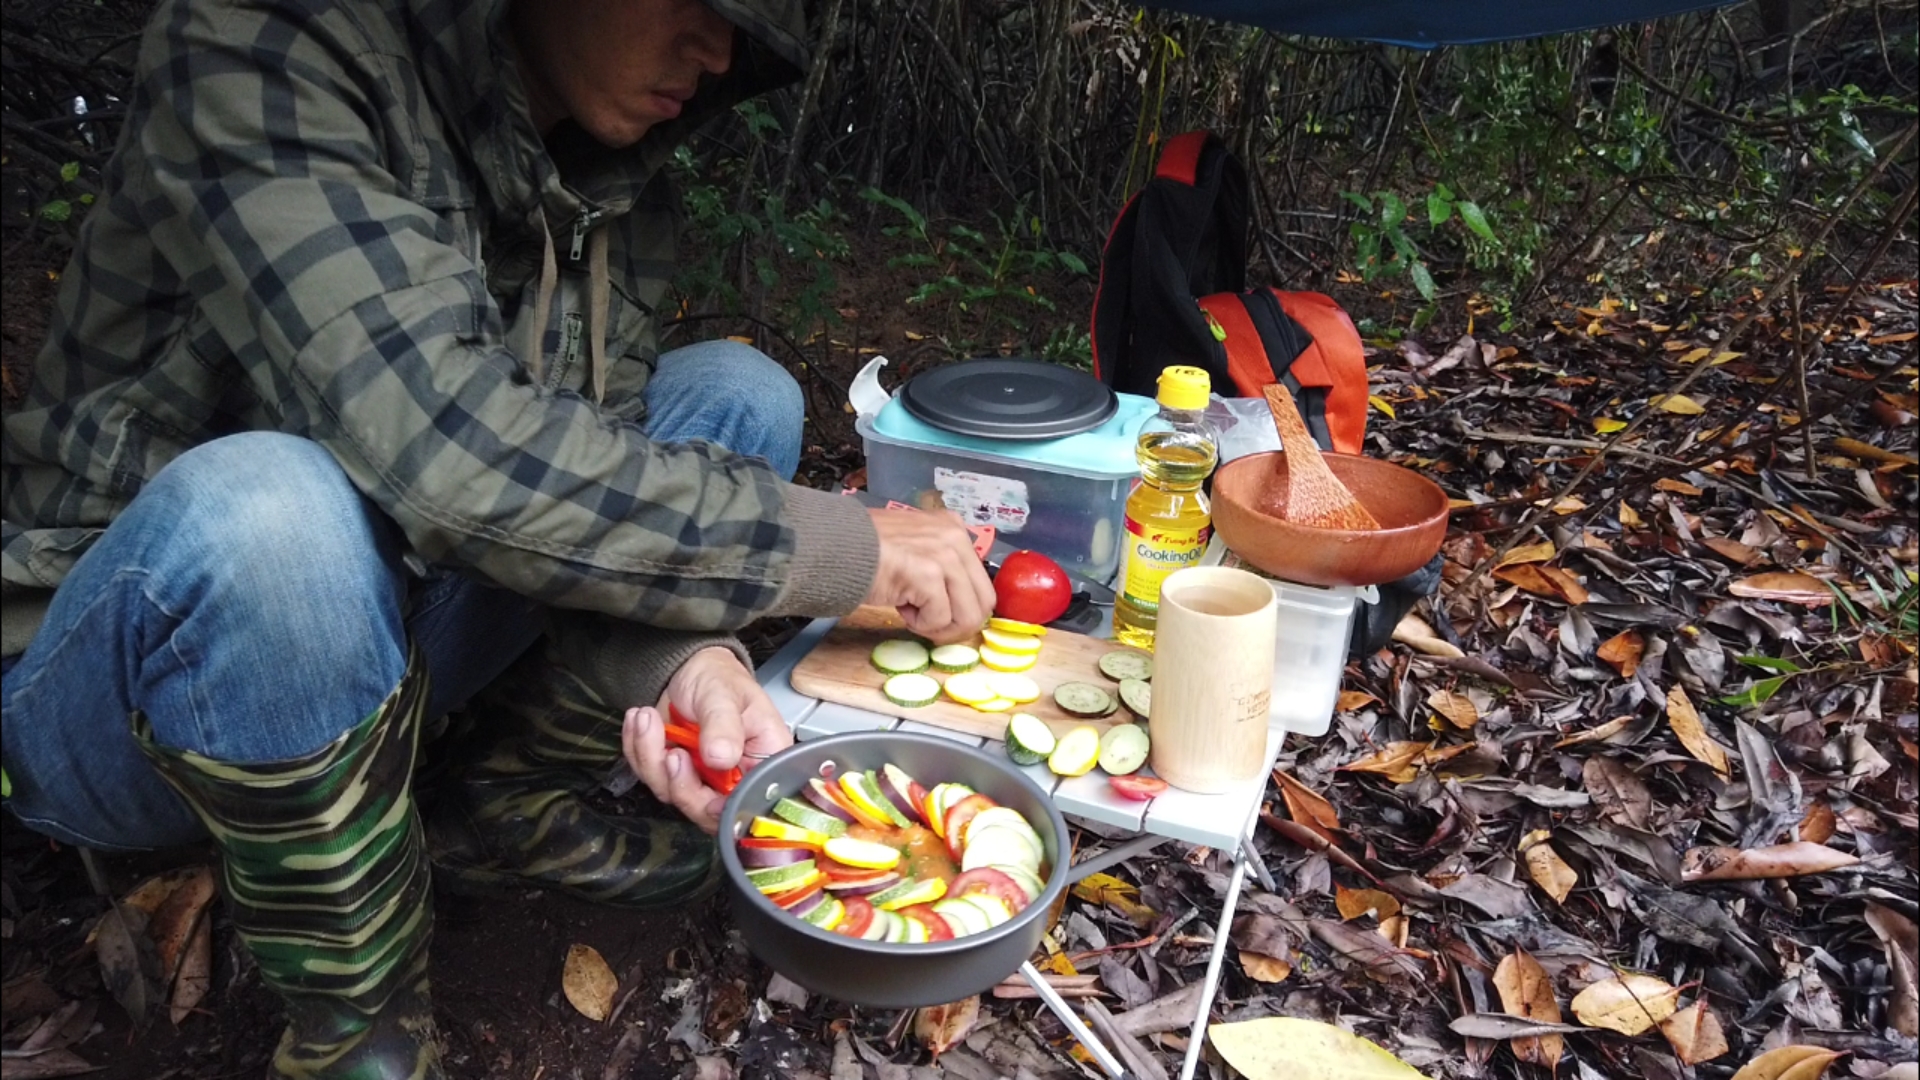 Nấu ăn trong rừng giữa cơn mưa, quá phê.